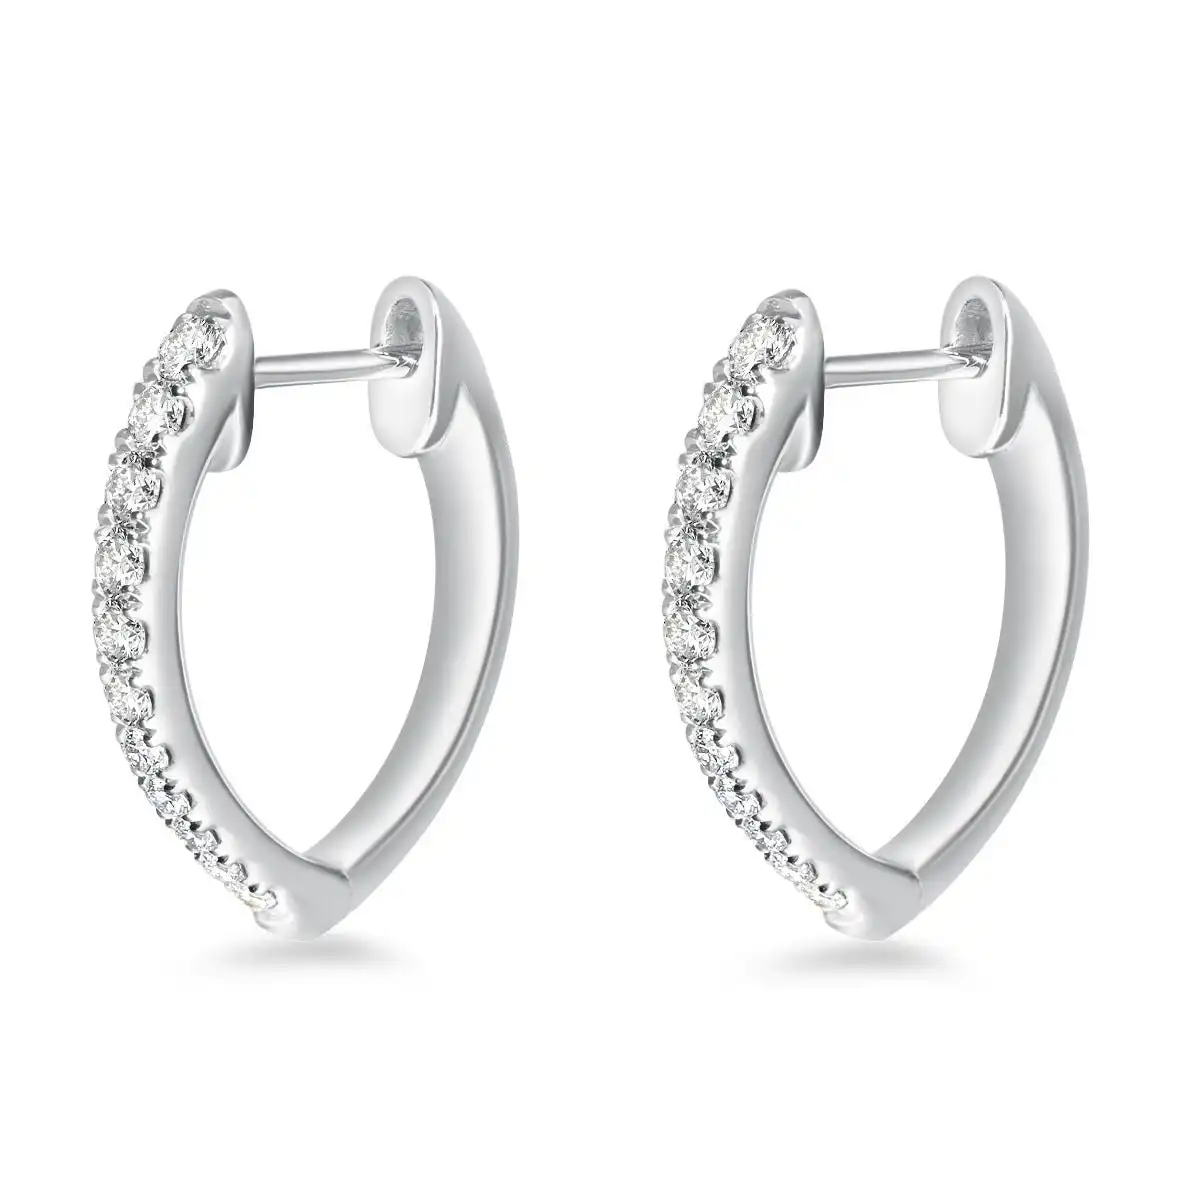 Memoire 18ct White Gold 0.30 Carat Diamond Imperial Hoop Earrings 16X14mm